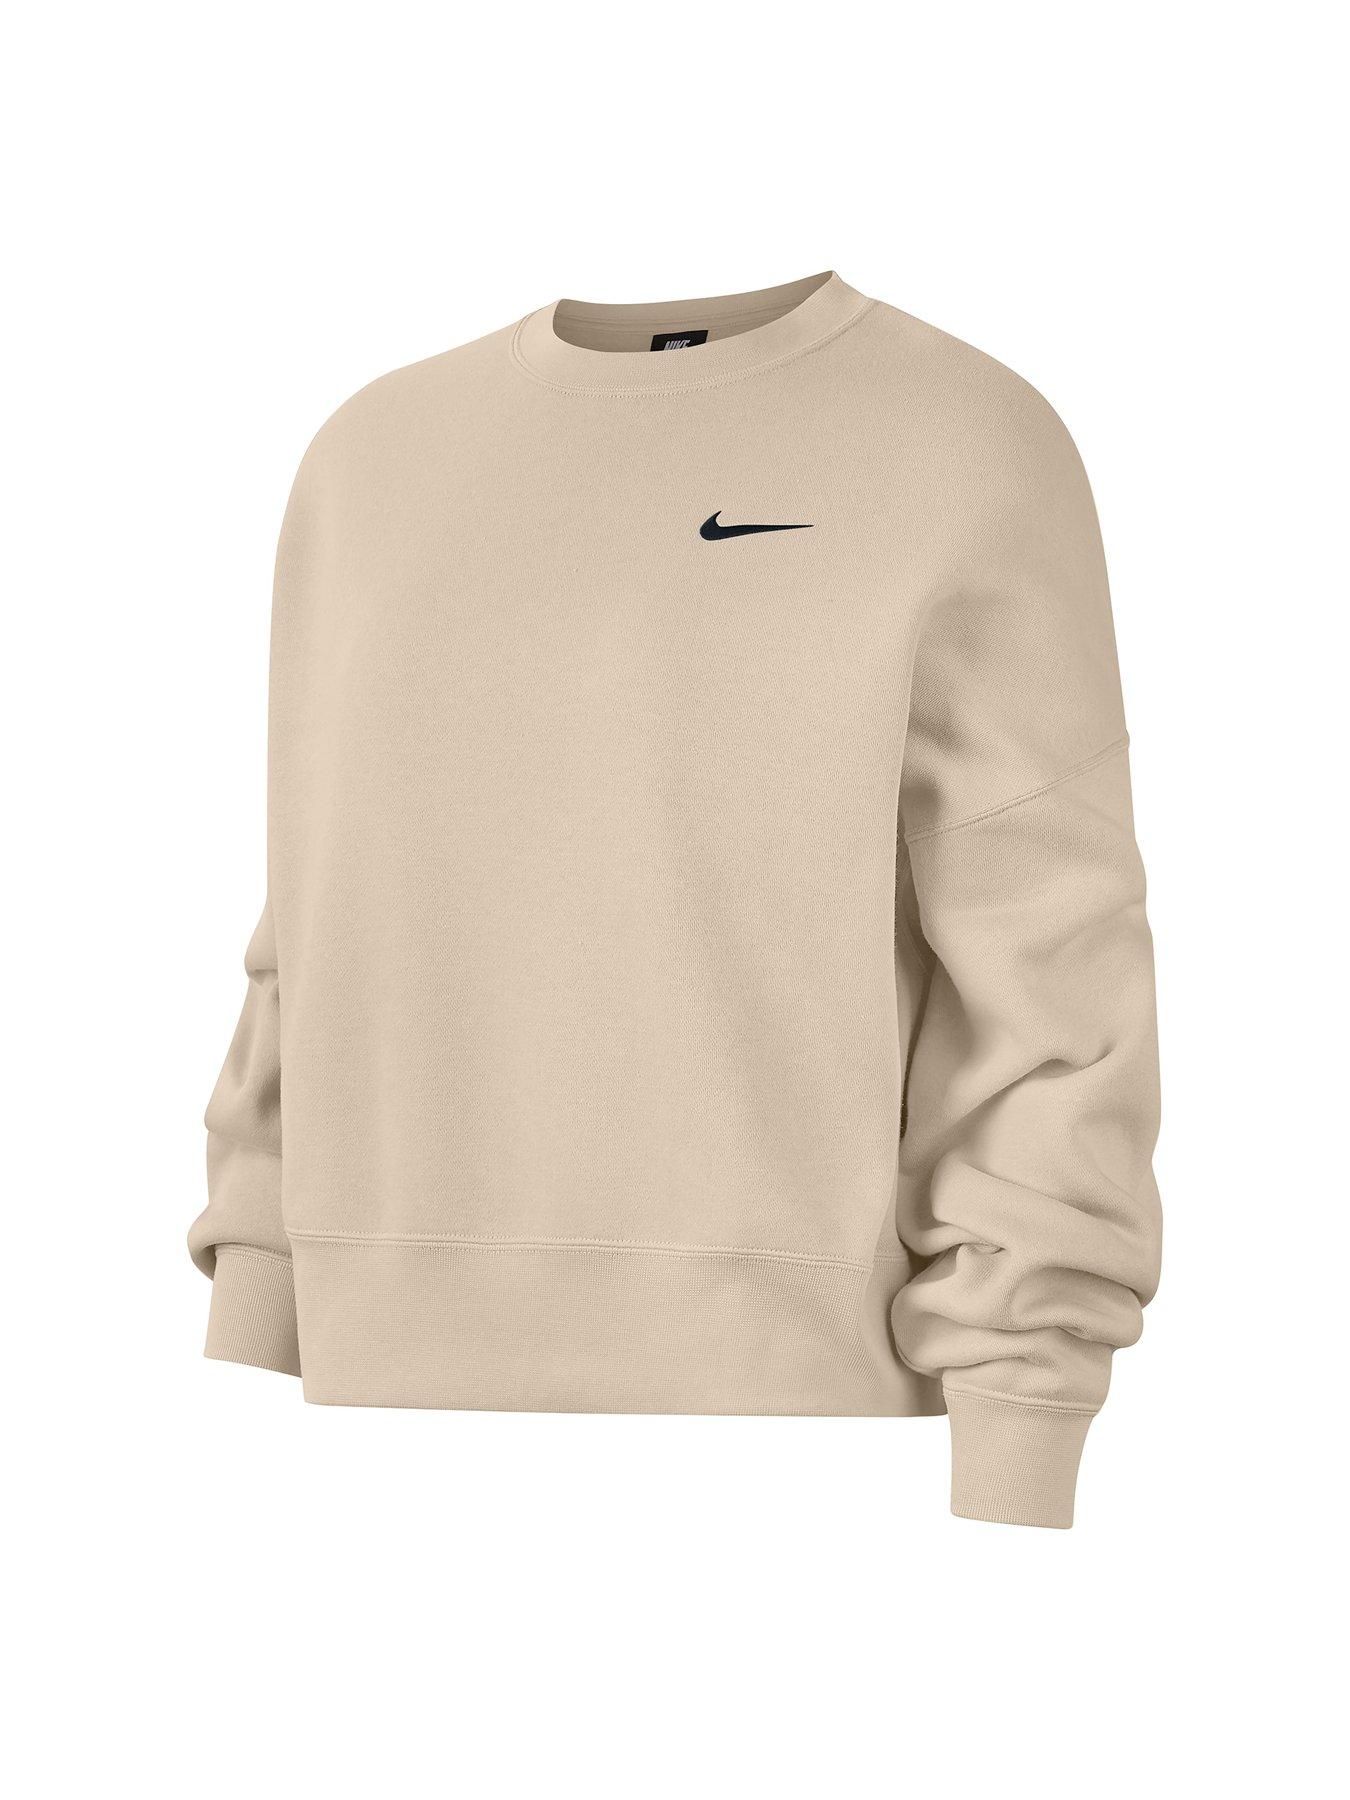 Nike NSW Trend Sweatshirt - Oatmeal 